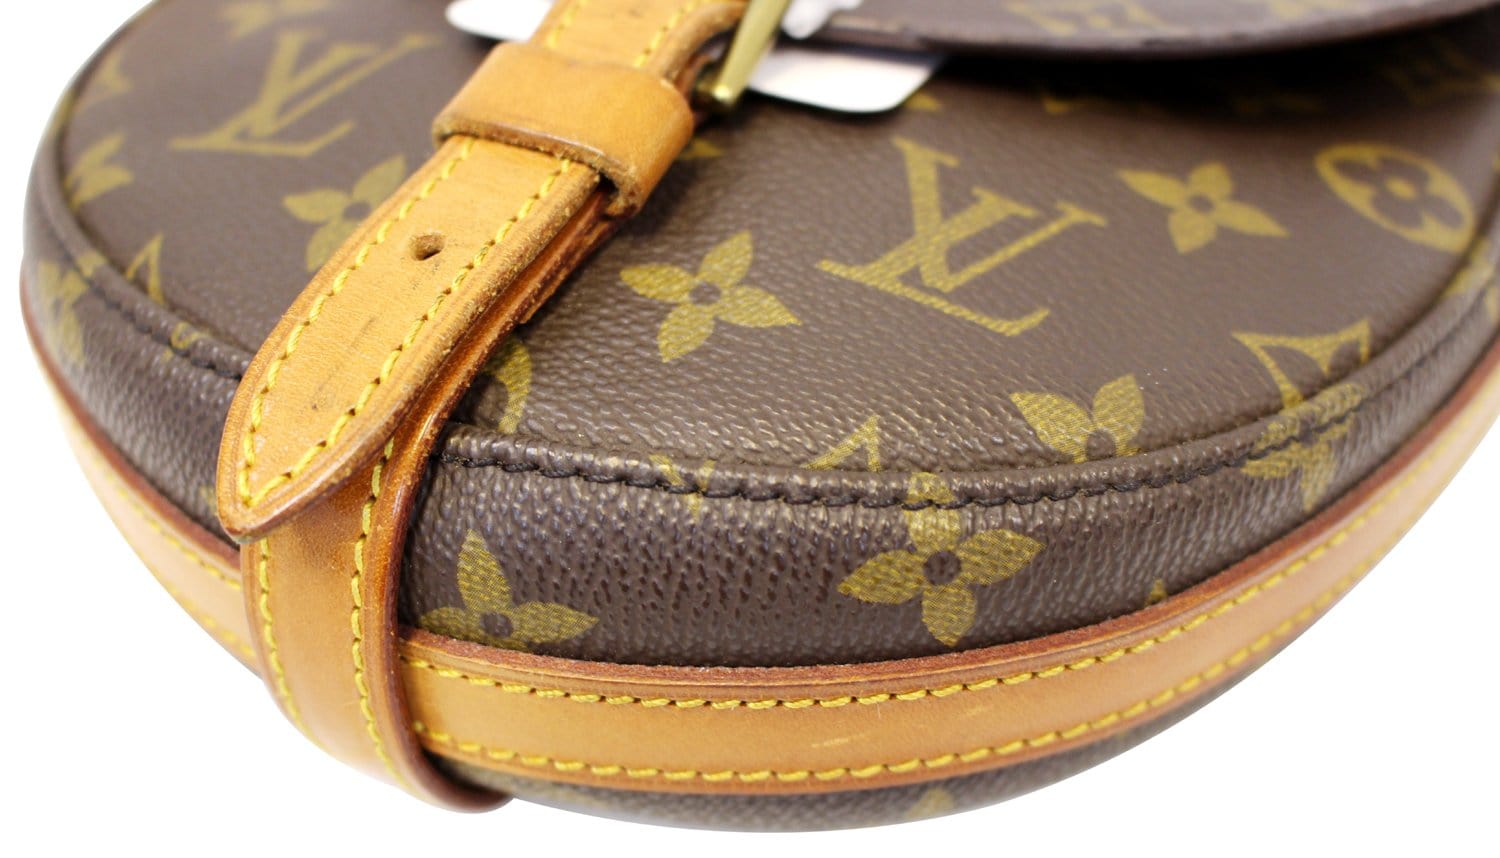 Authentic Louis Vuitton Shoulder Bag Chantilly GM M40647 Browns Monogram